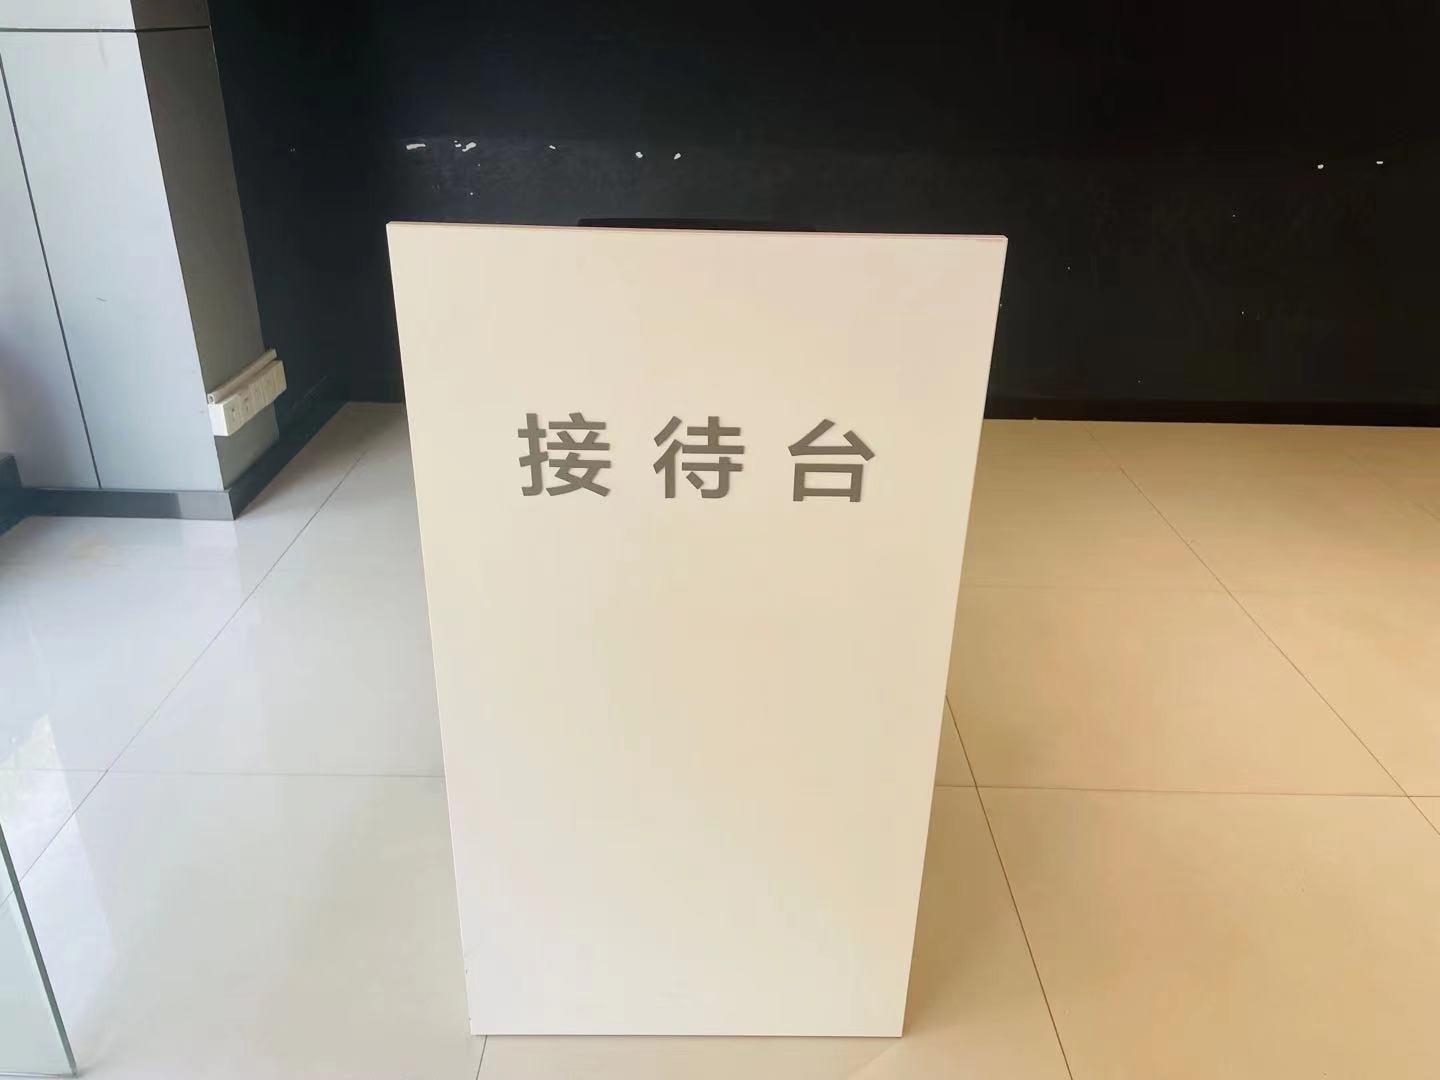 武汉星悦驰新能源4S店